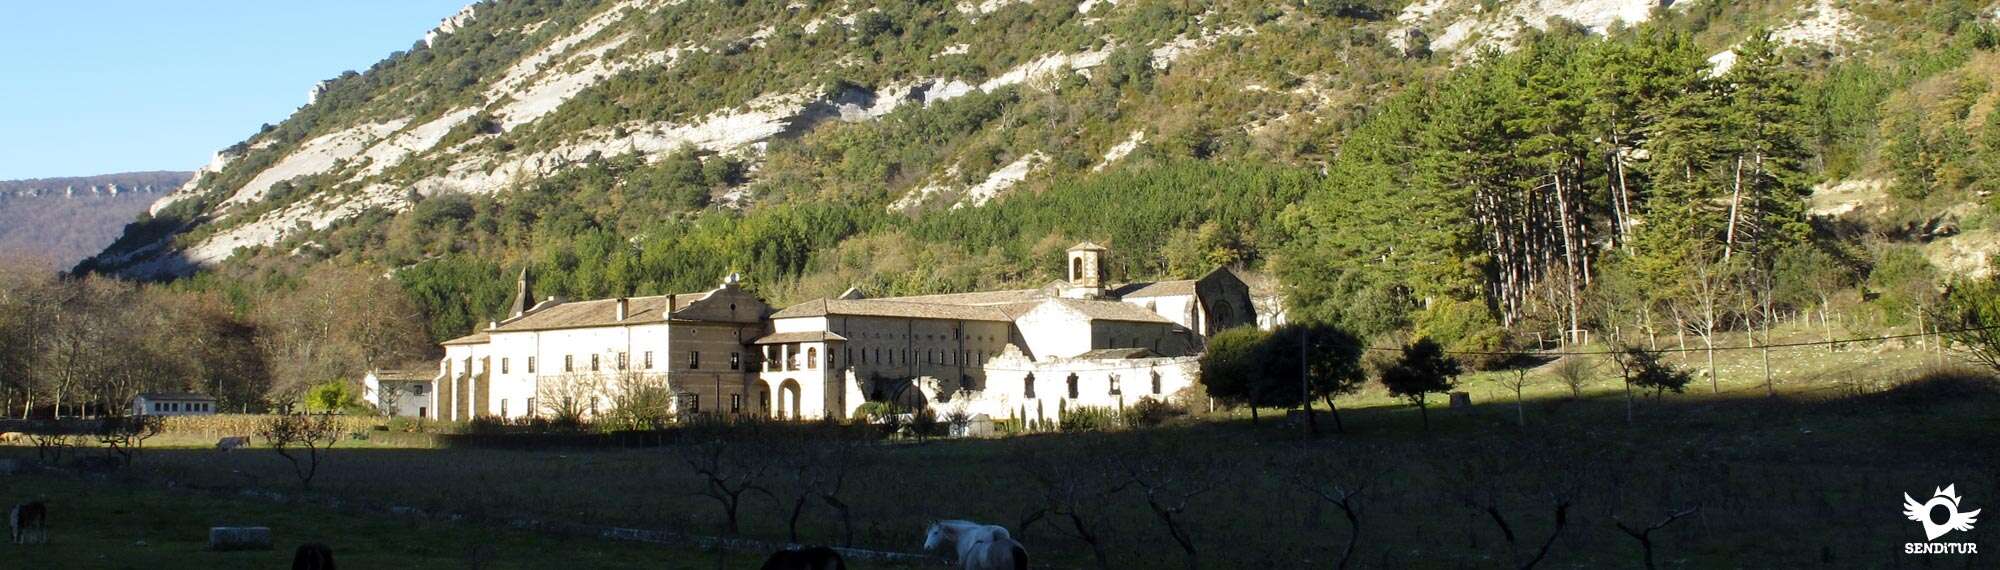 Ruta de los Monasterios y Santuarios de Navarra